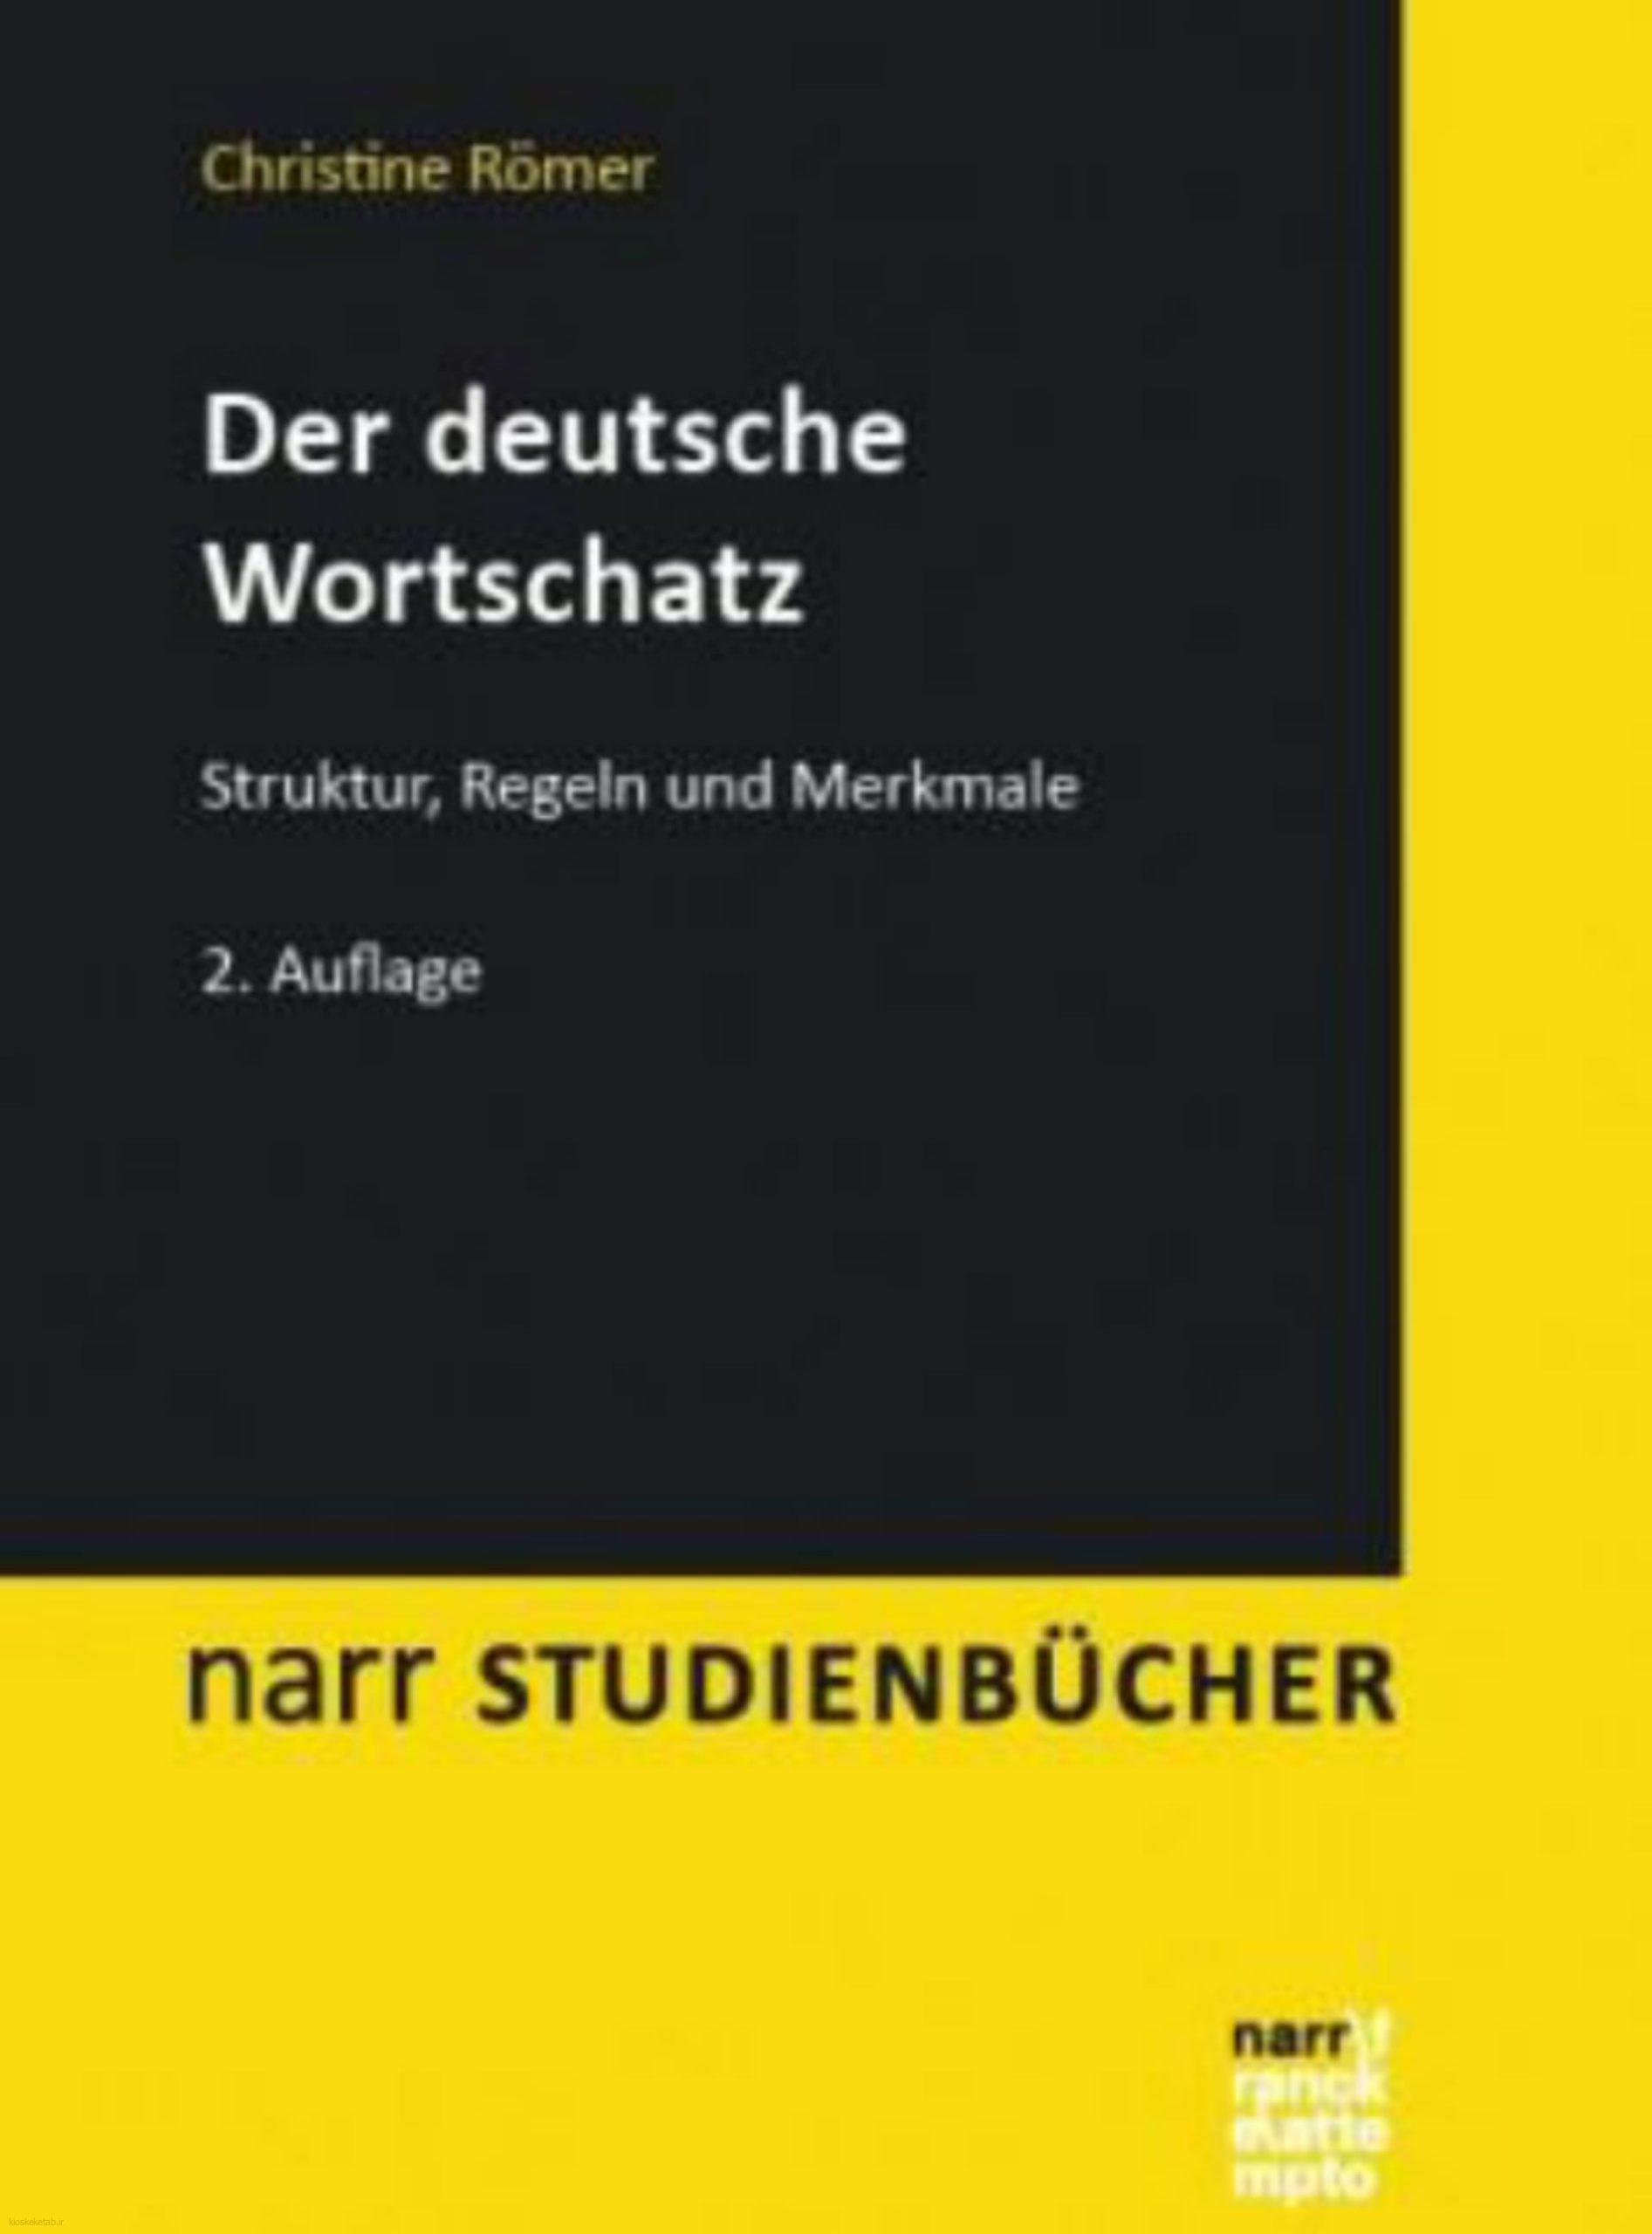 دانلود کتاب آلمانیder deutsche wortschatz